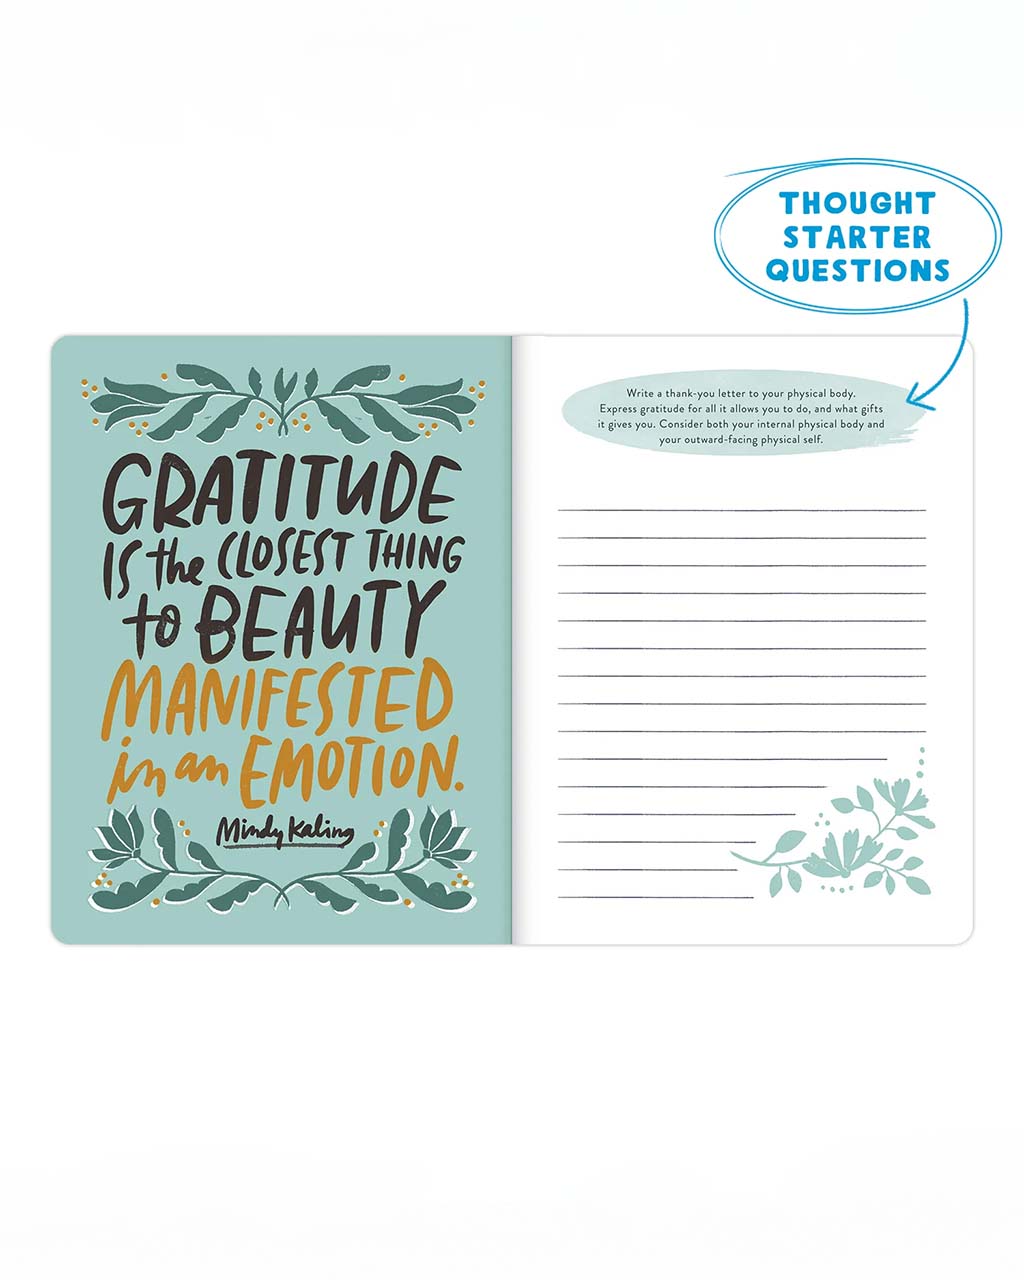 Gratitude Guided Journal